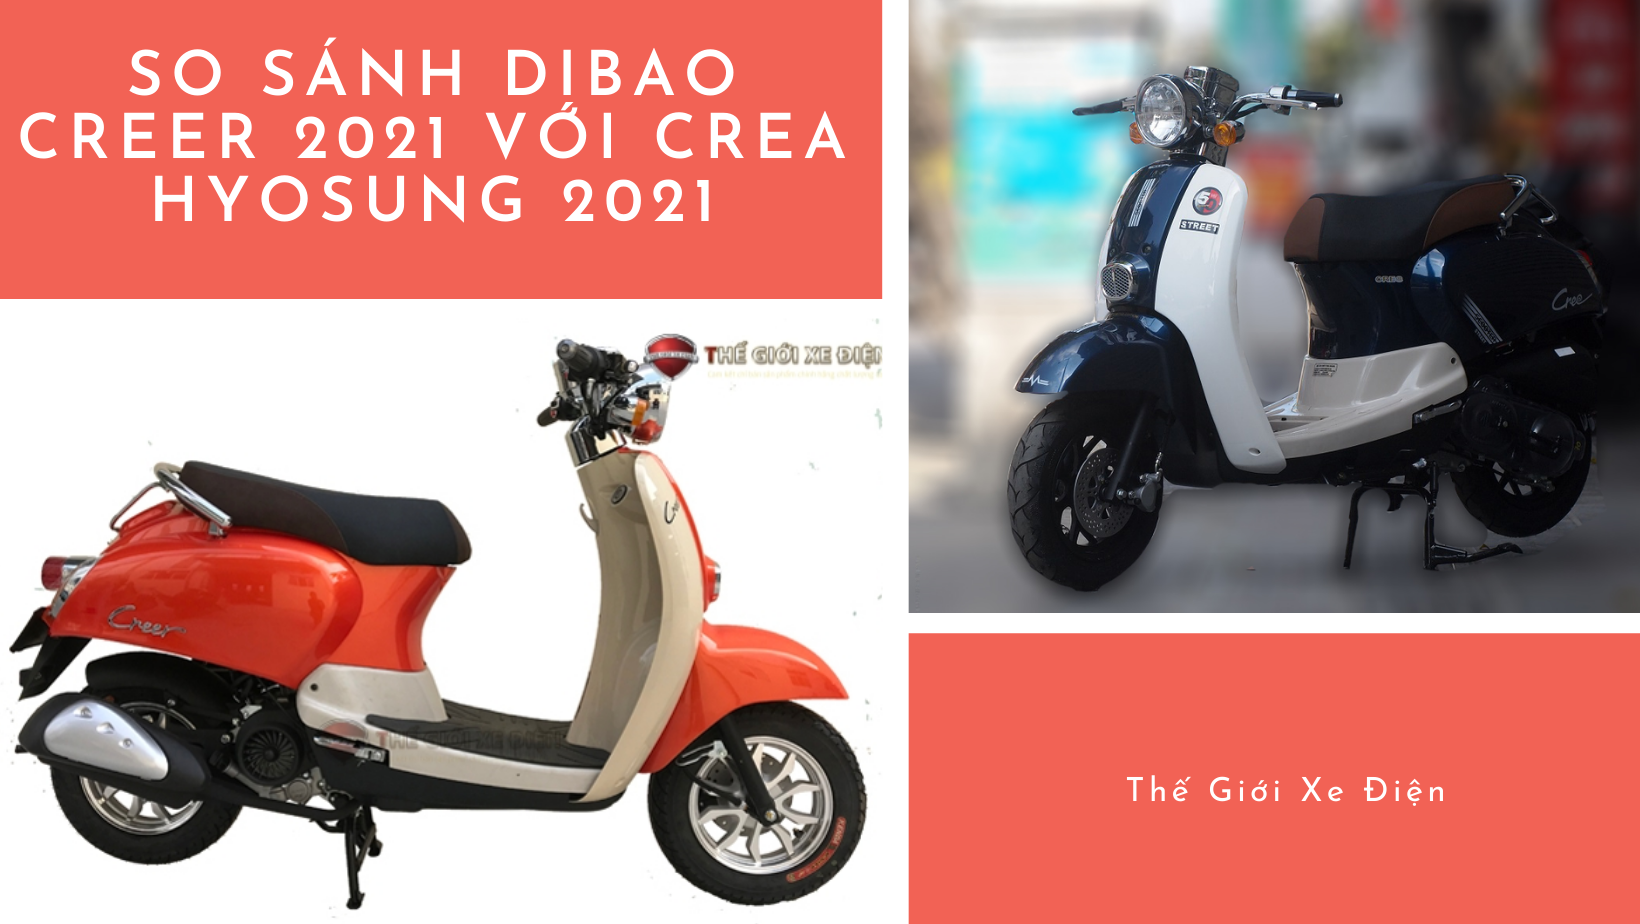  Xe ga 50cc Dibao Creer 2021 và Crea Hyosung 2021